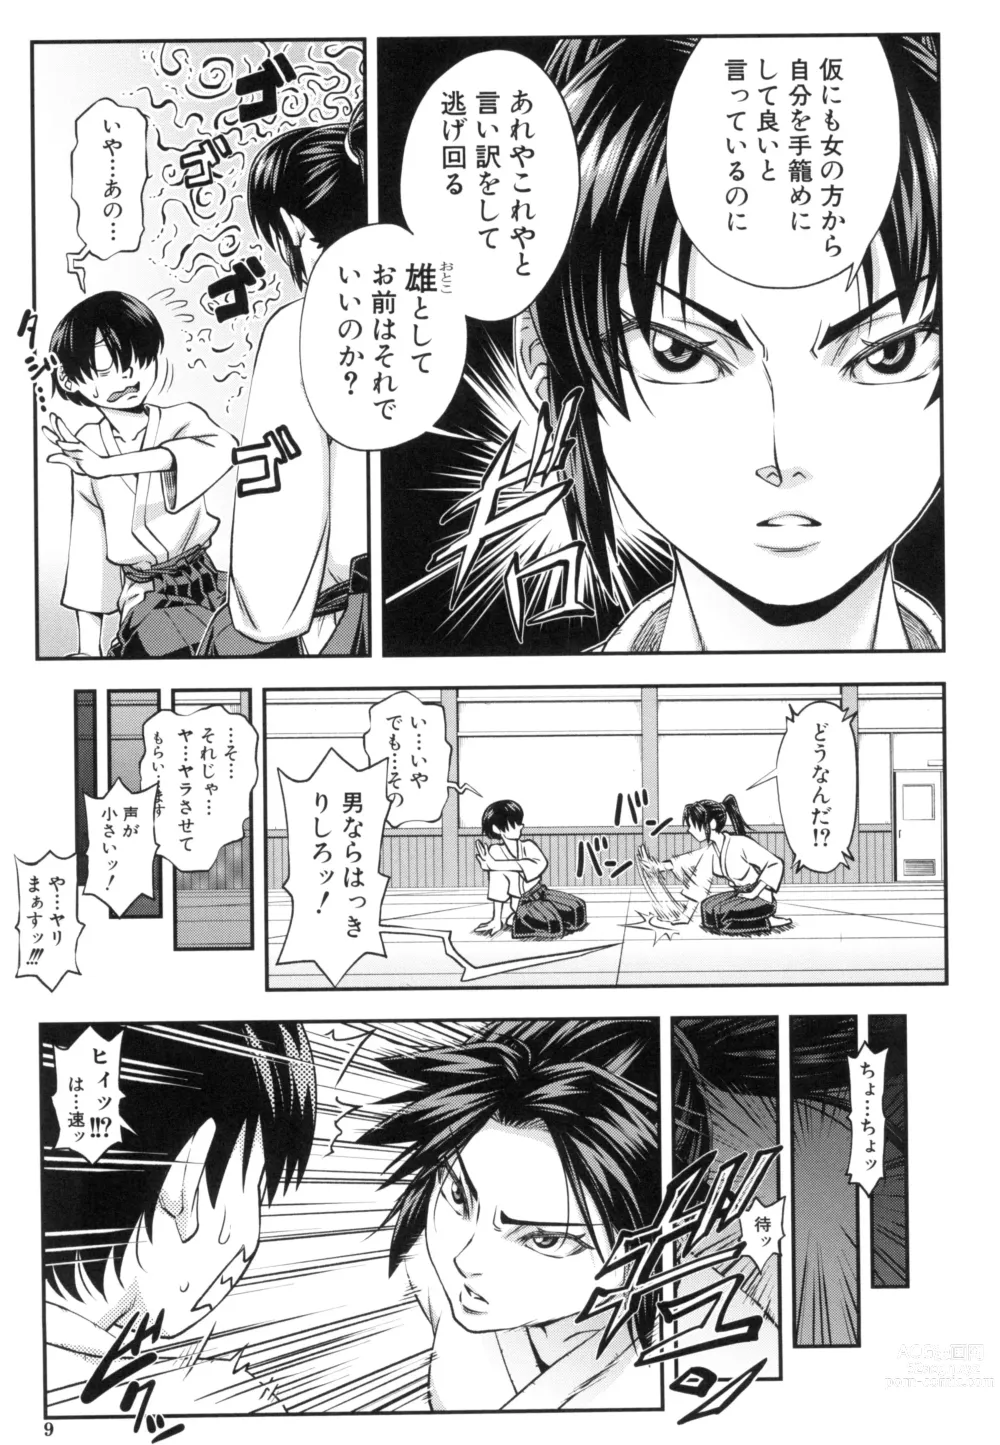 Page 9 of manga Yareba Yaru Hodo Suki ni Naru